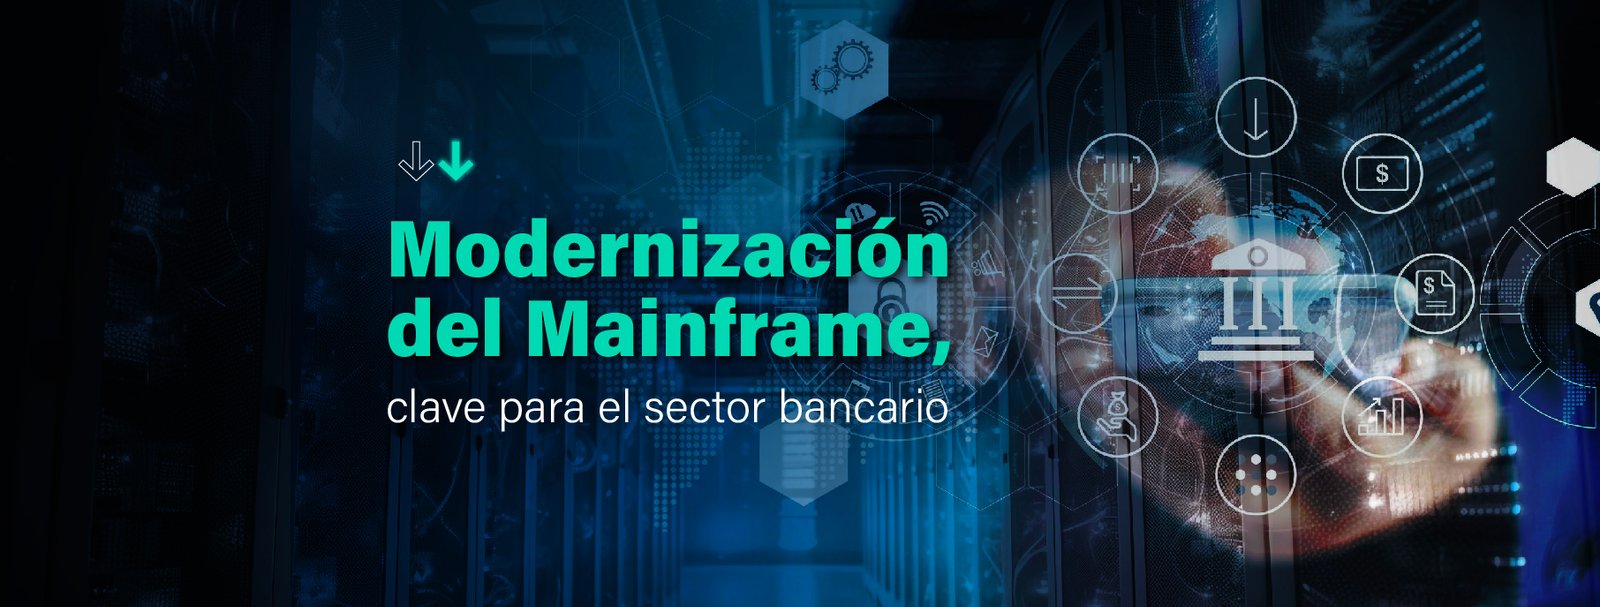 Modernización del Mainframe en el sector bancario: las razones que explican la importancia de encarar este proyecto.